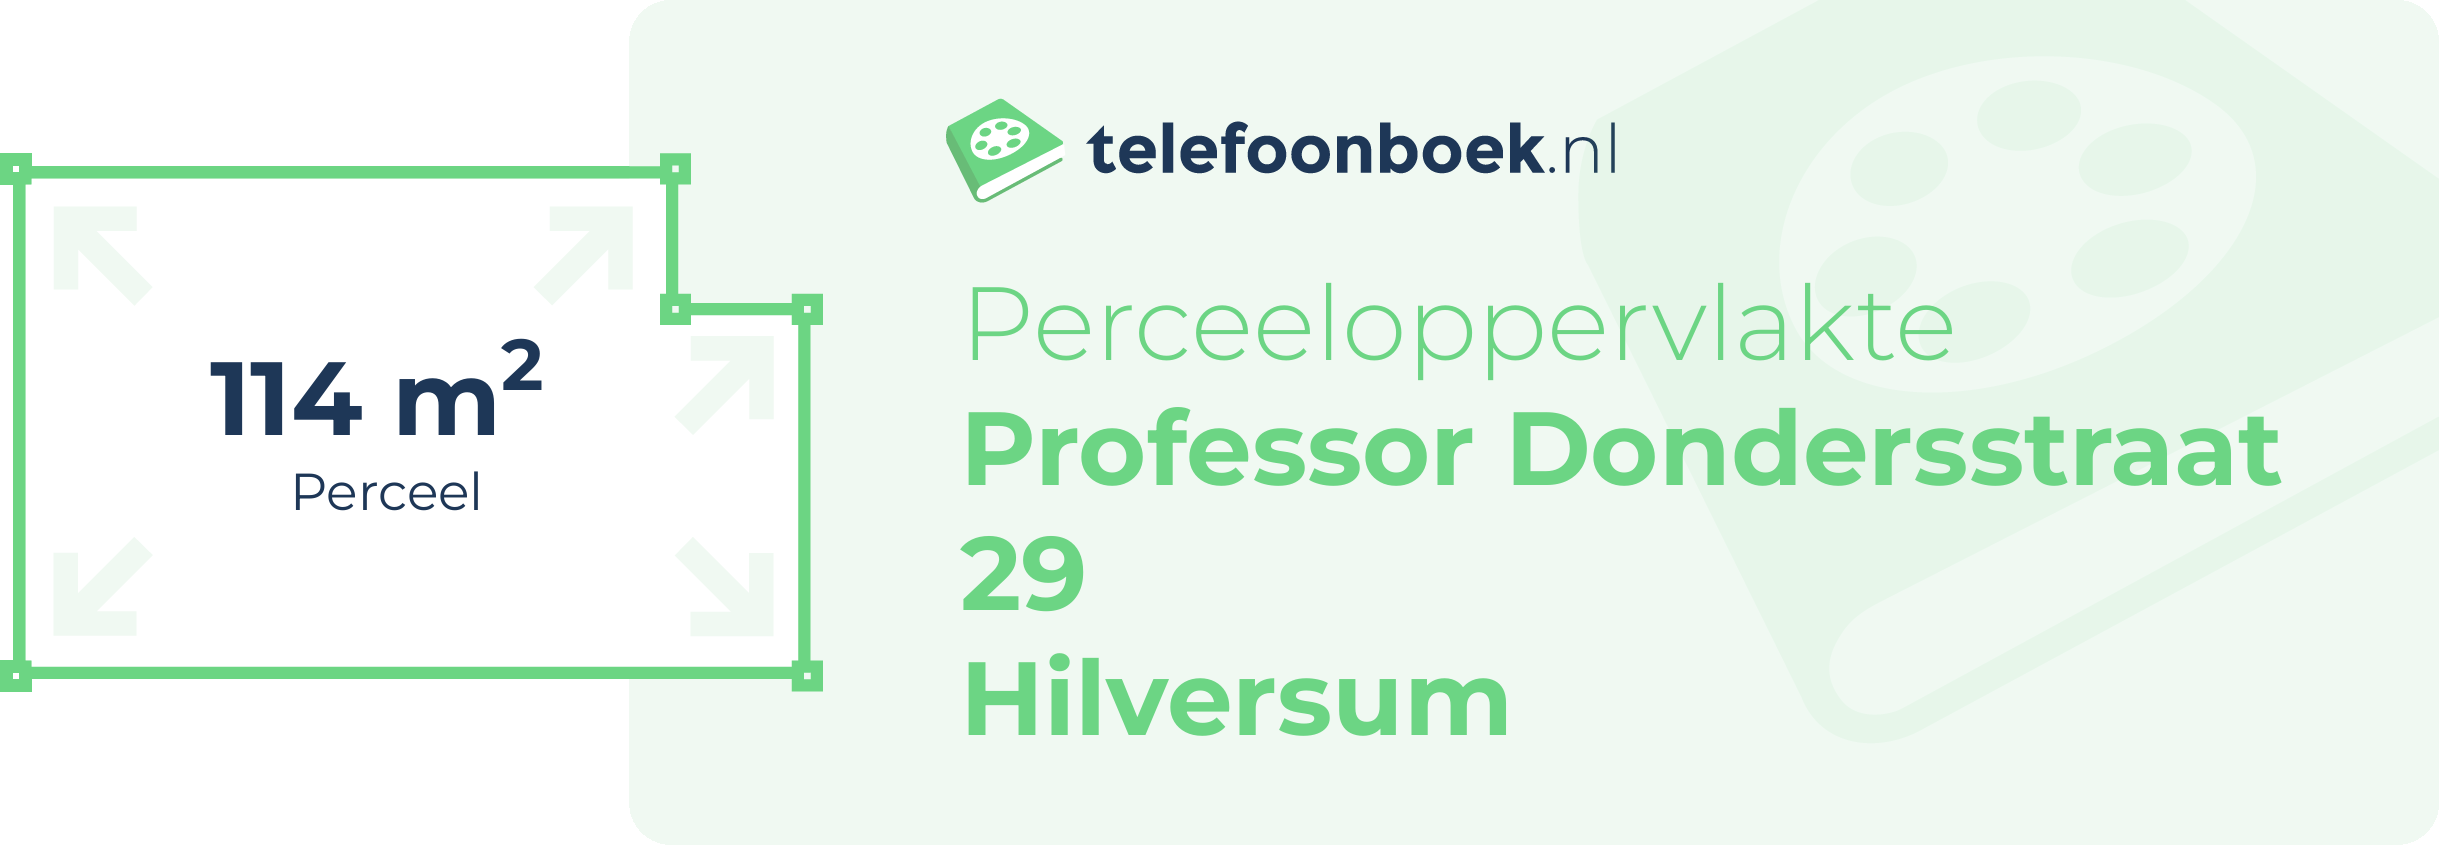 Perceeloppervlakte Professor Dondersstraat 29 Hilversum